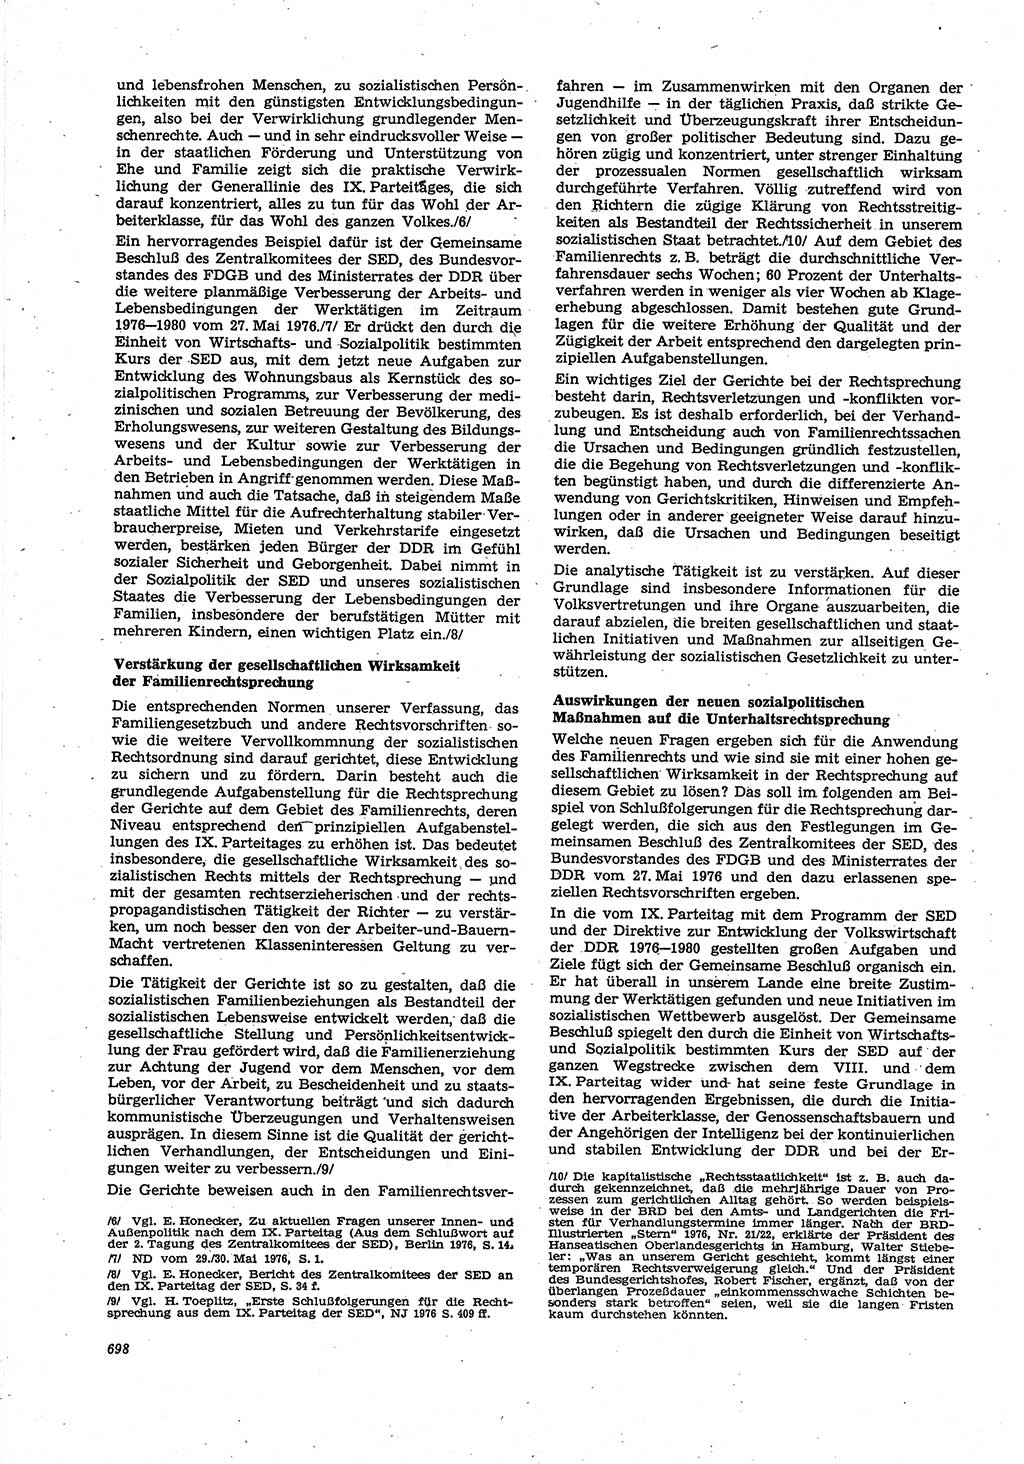 Neue Justiz (NJ), Zeitschrift für Recht und Rechtswissenschaft [Deutsche Demokratische Republik (DDR)], 30. Jahrgang 1976, Seite 698 (NJ DDR 1976, S. 698)